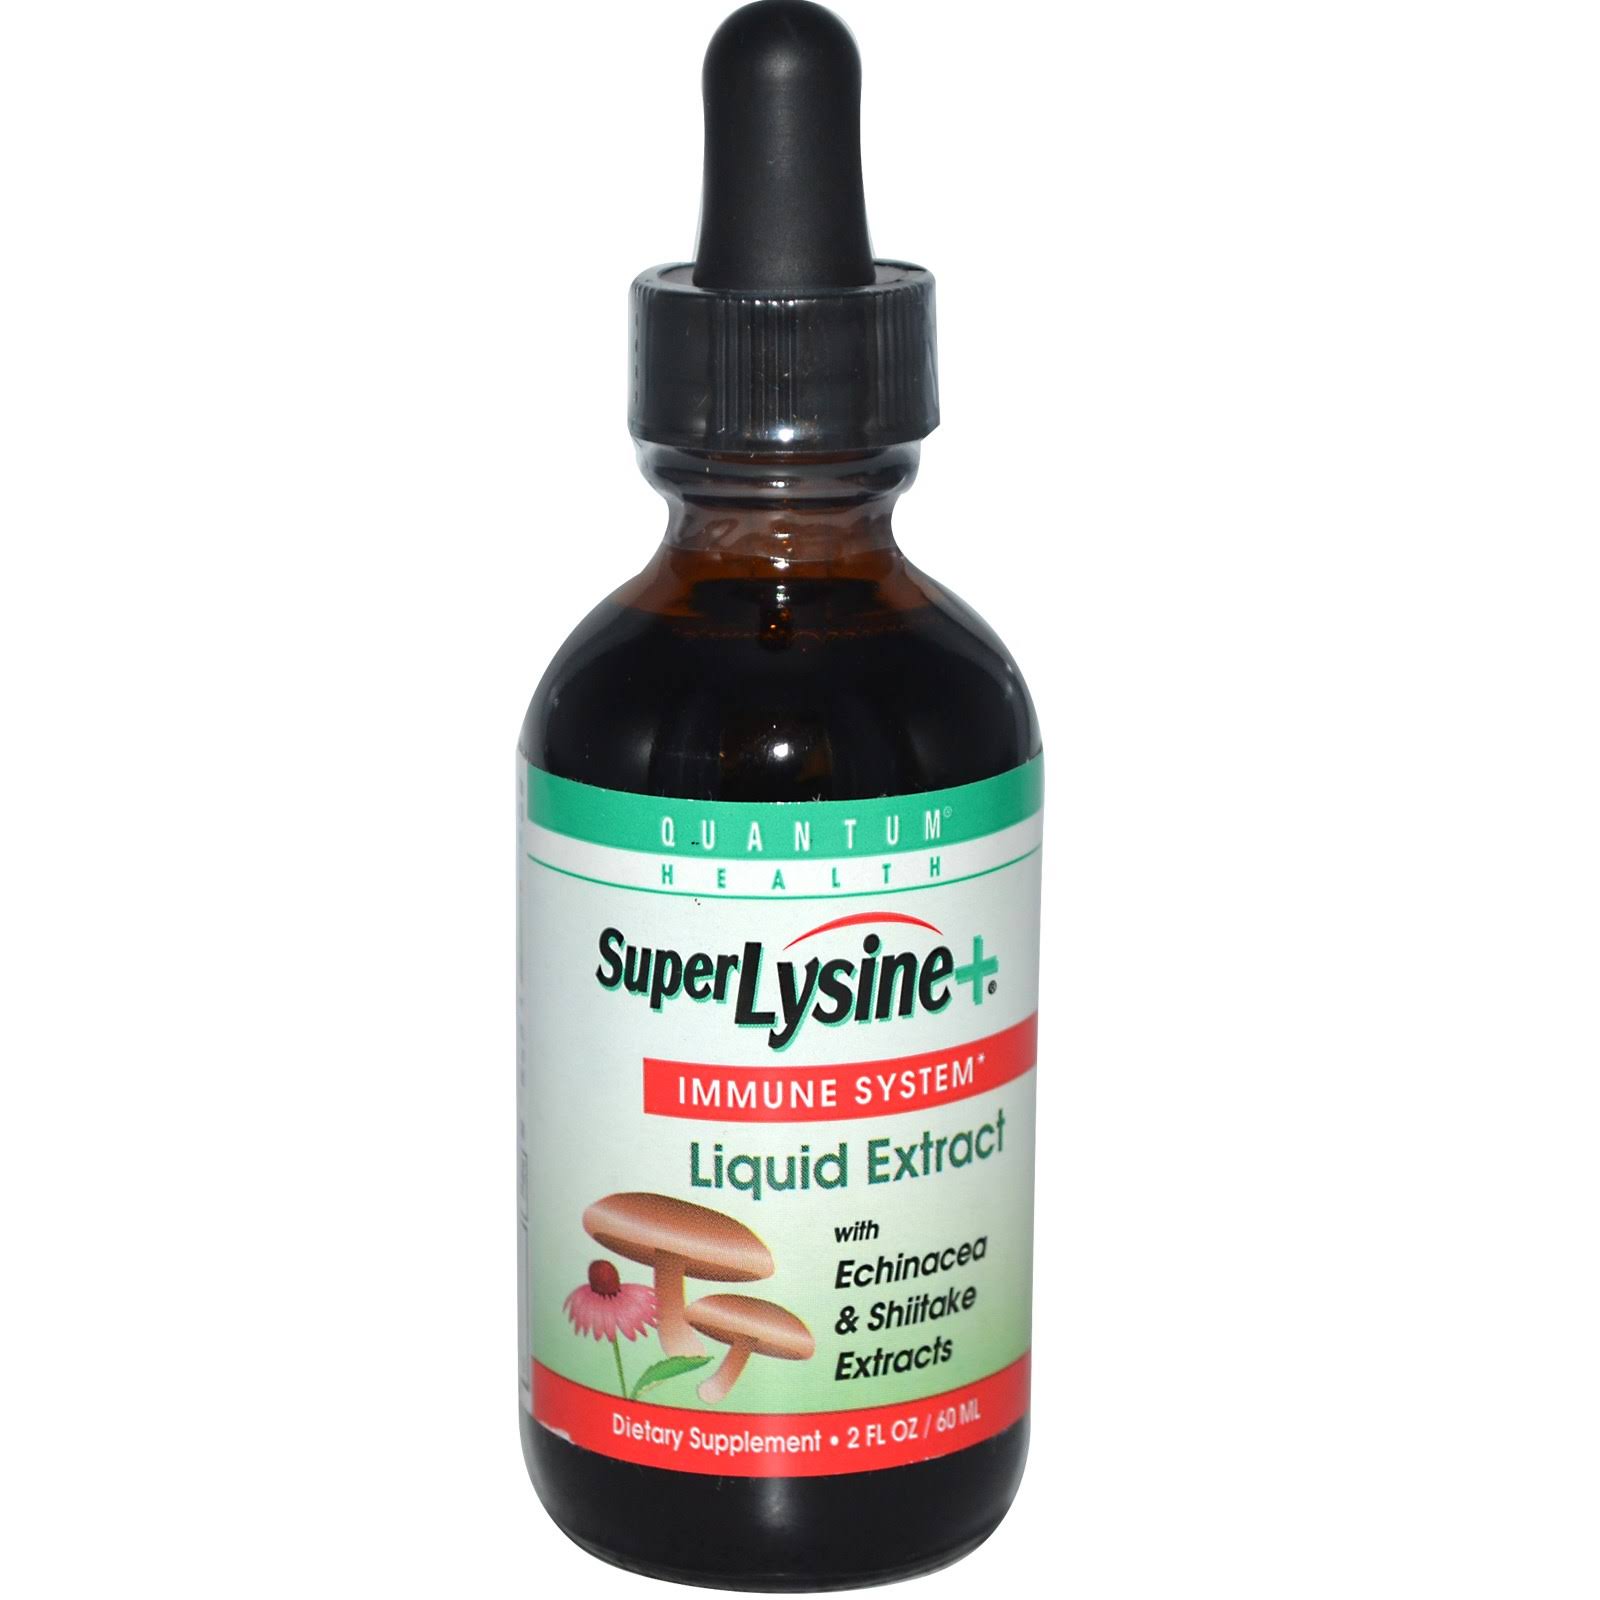 Quantum Health Super Lysine Plus Liquid Extract - 2oz